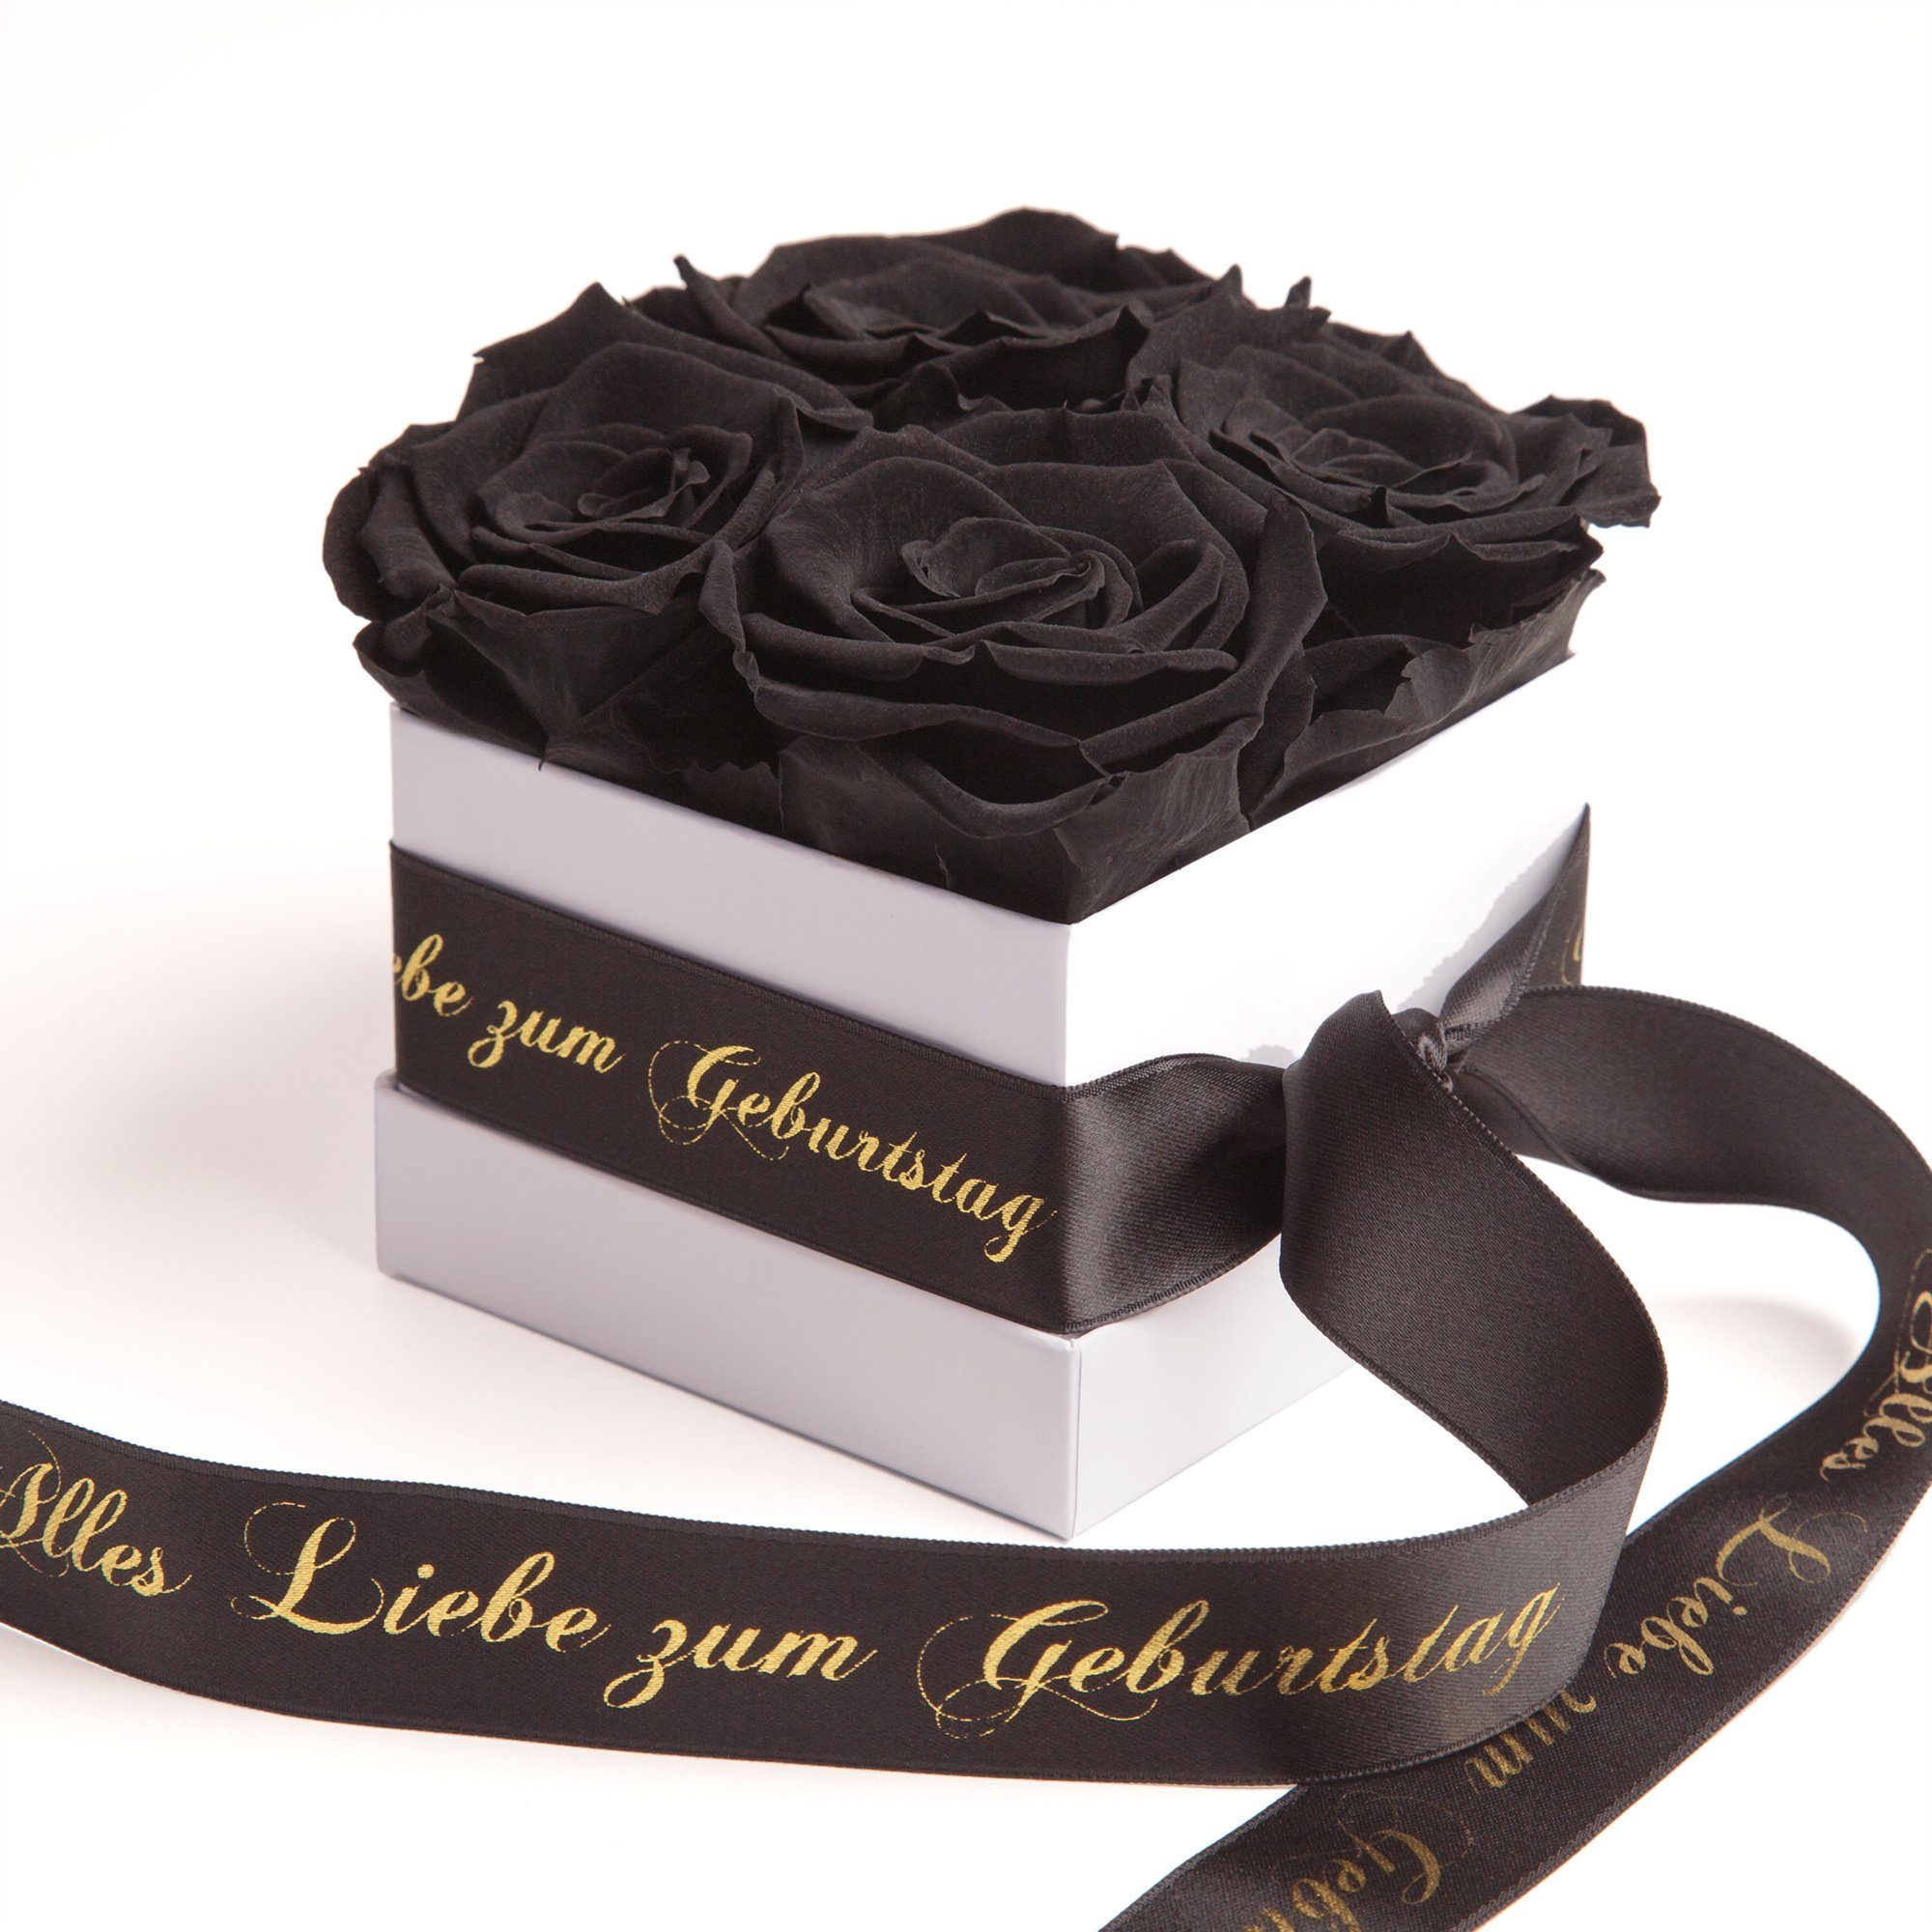 ROSEMARIE SCHULZ Heidelberg Dekoobjekt Infinity Rosenbox Alles Liebe zum Geburtstag Blumen Geschenk, Echte Rose haltbar bis zu 3 Jahre schwarz